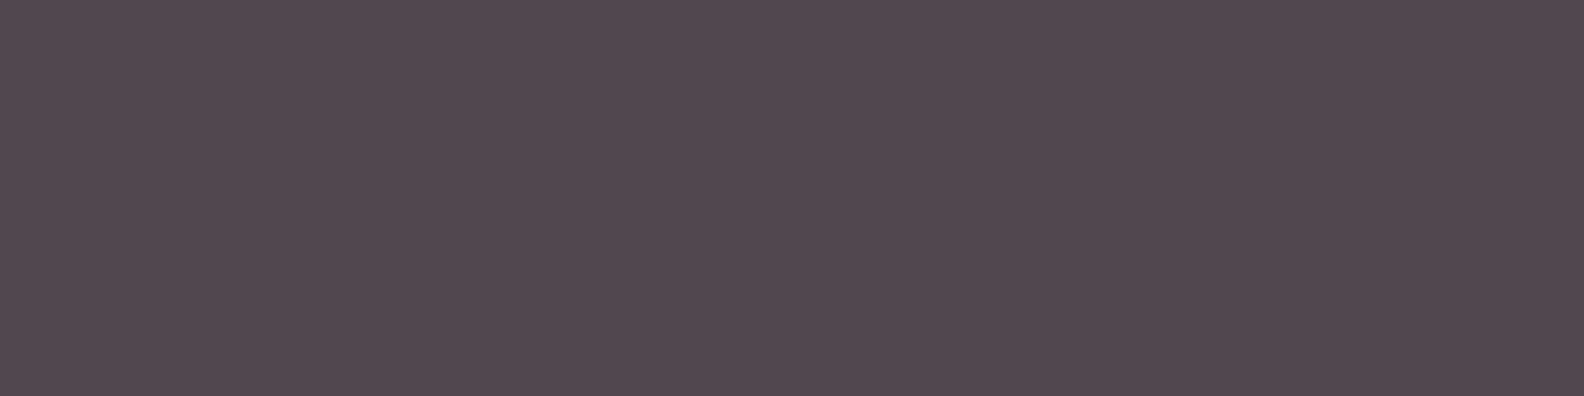 1584x396 Quartz Solid Color Background